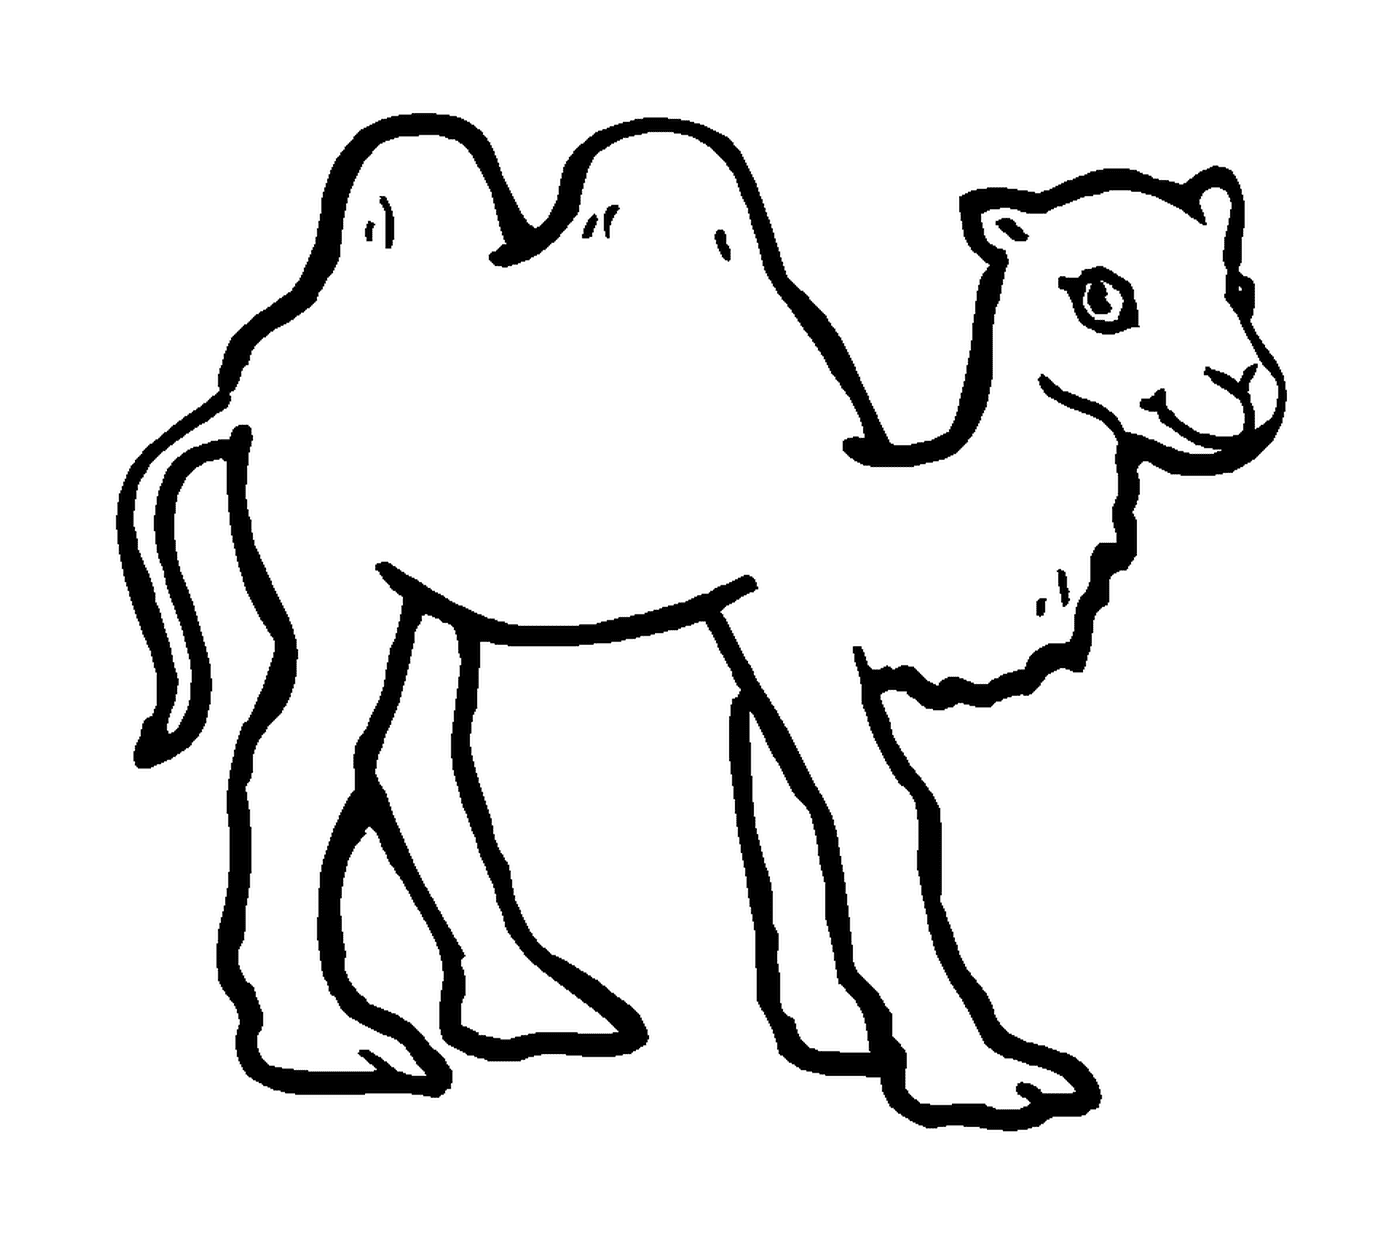  Ein Kamel in schwarz gezeichnet 